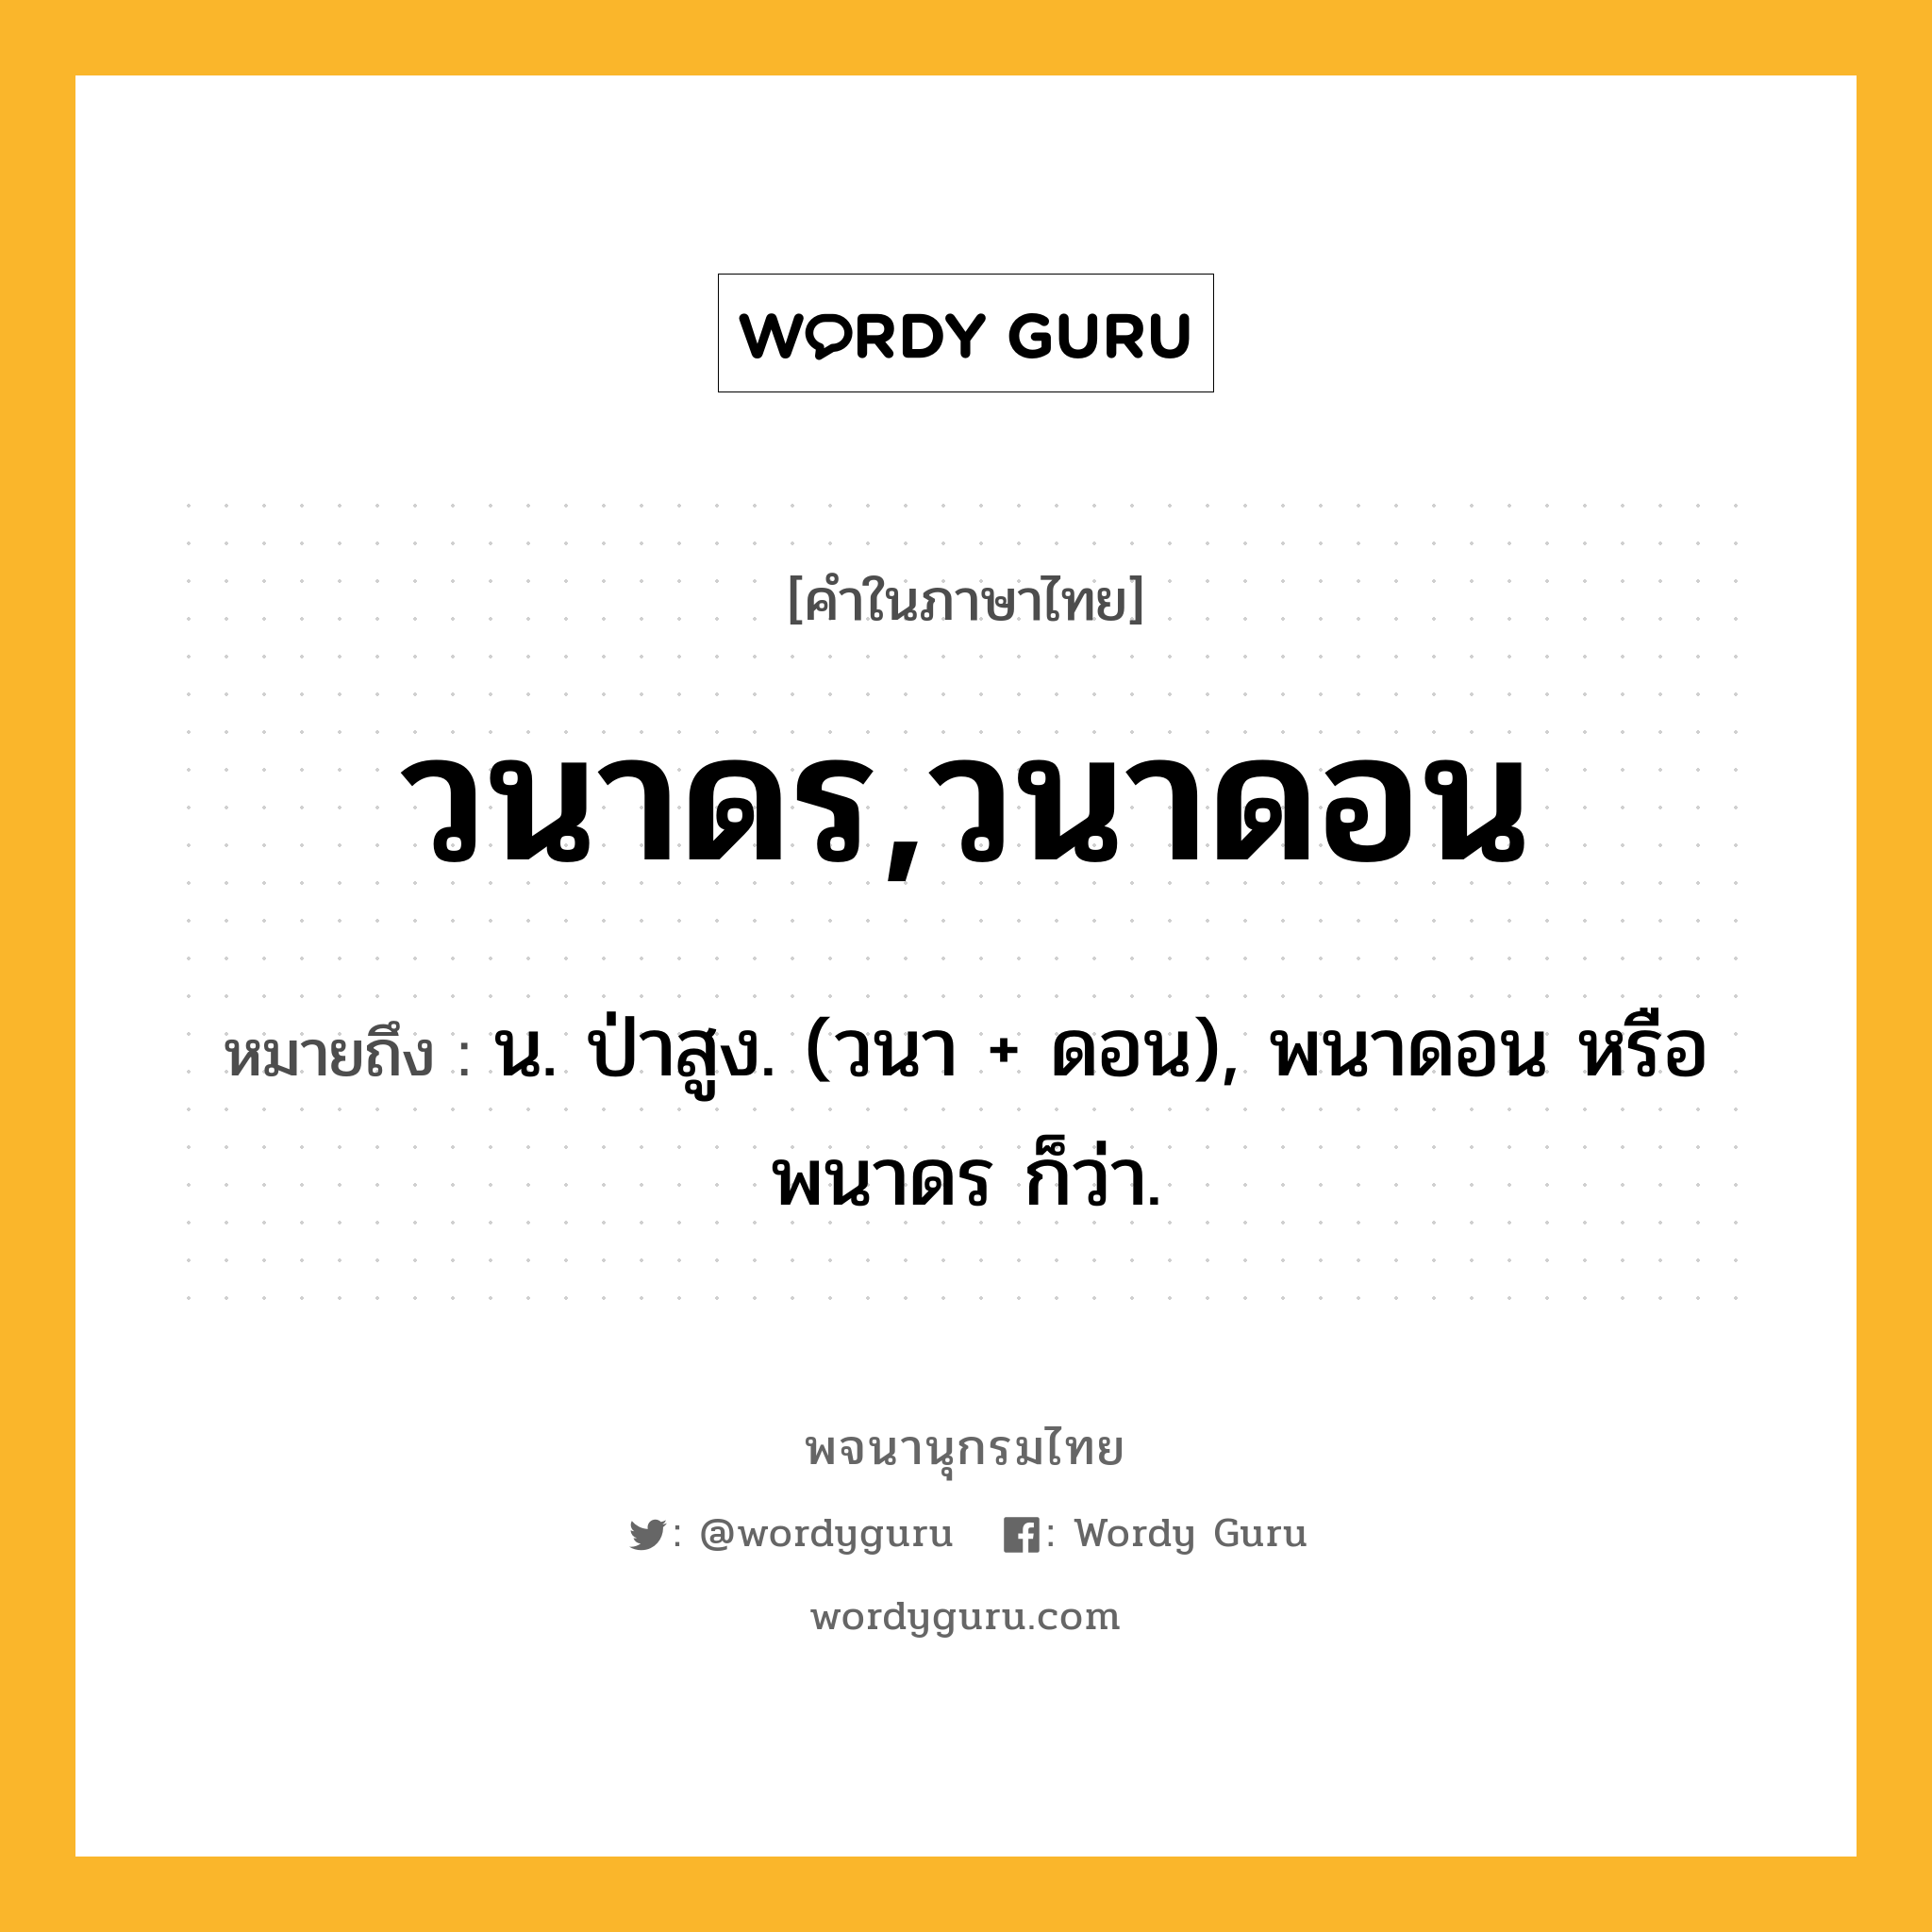 วนาดร,วนาดอน ความหมาย หมายถึงอะไร?, คำในภาษาไทย วนาดร,วนาดอน หมายถึง น. ป่าสูง. (วนา + ดอน), พนาดอน หรือ พนาดร ก็ว่า.